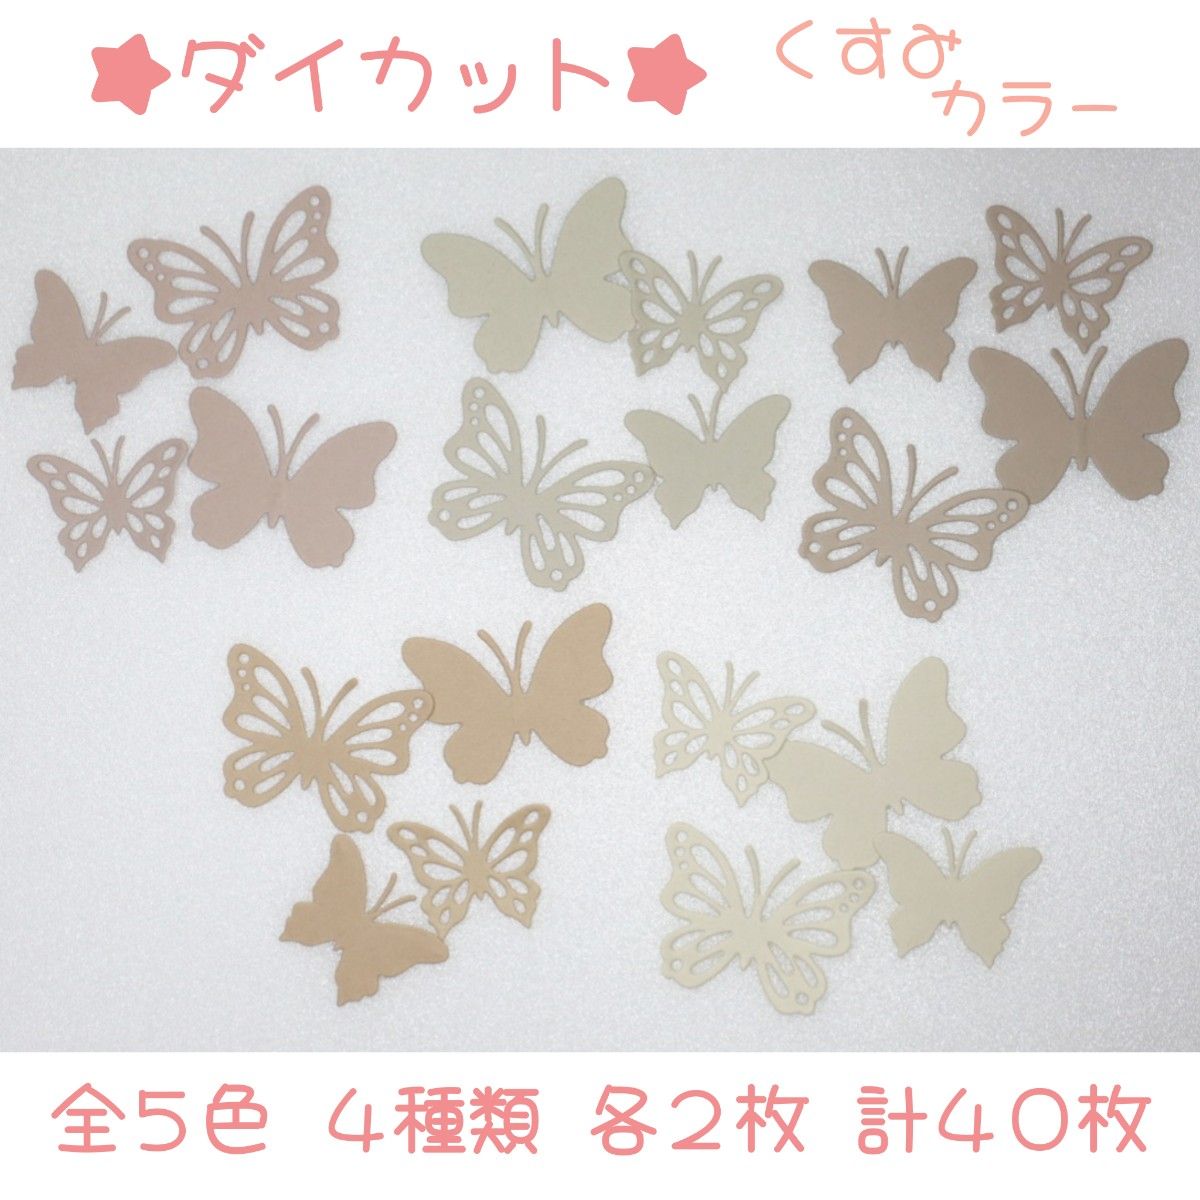 【ダイカット】くすみカラー・蝶・5色セット